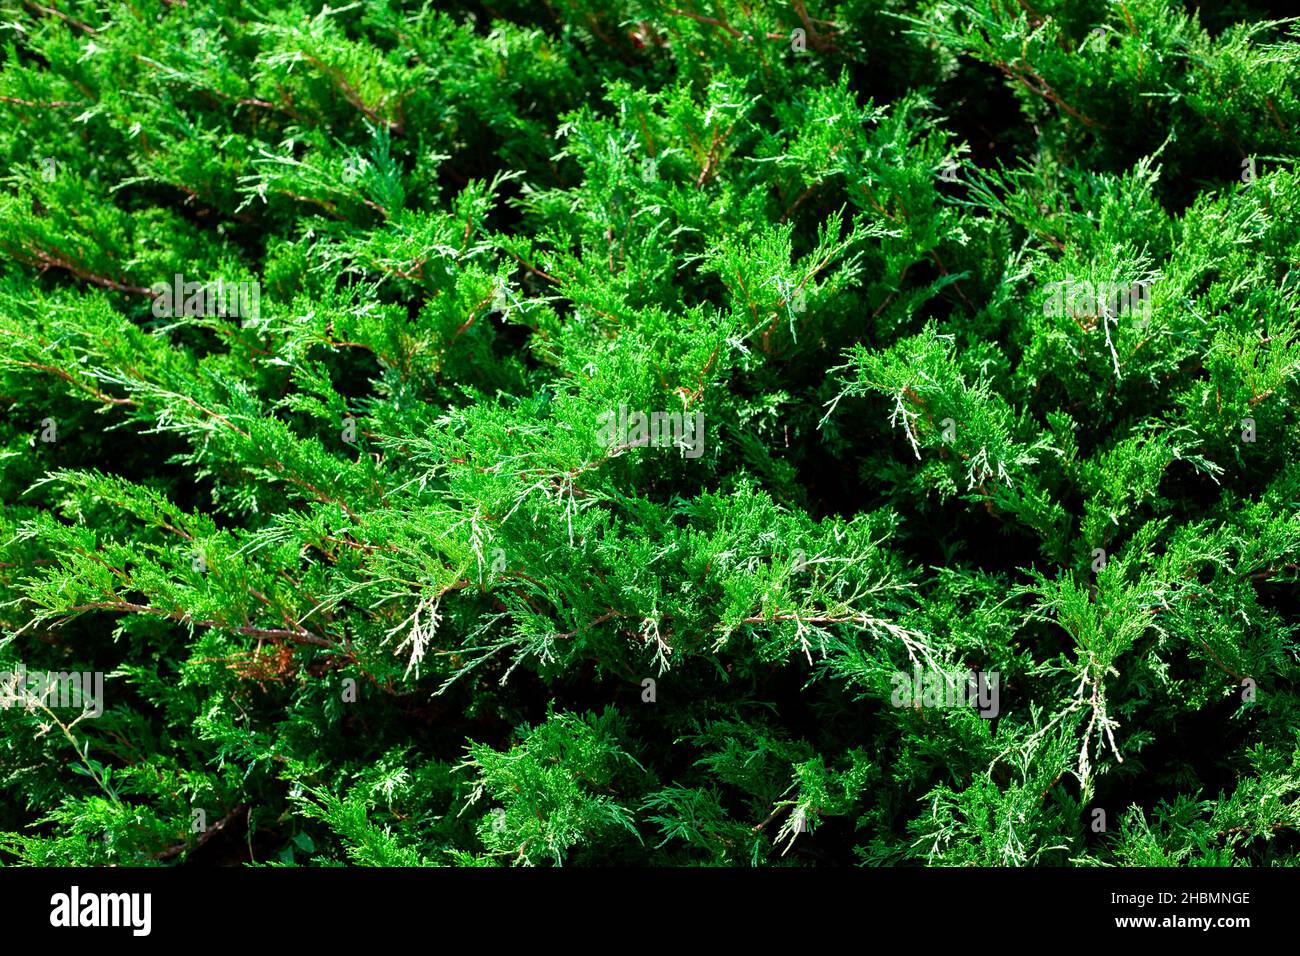 Der Wacholderbusch aus nächster Nähe. Hintergrund mit Wacholderzweigen, die im Park wachsen. Immergrüne Nadelpflanze. Stockfoto